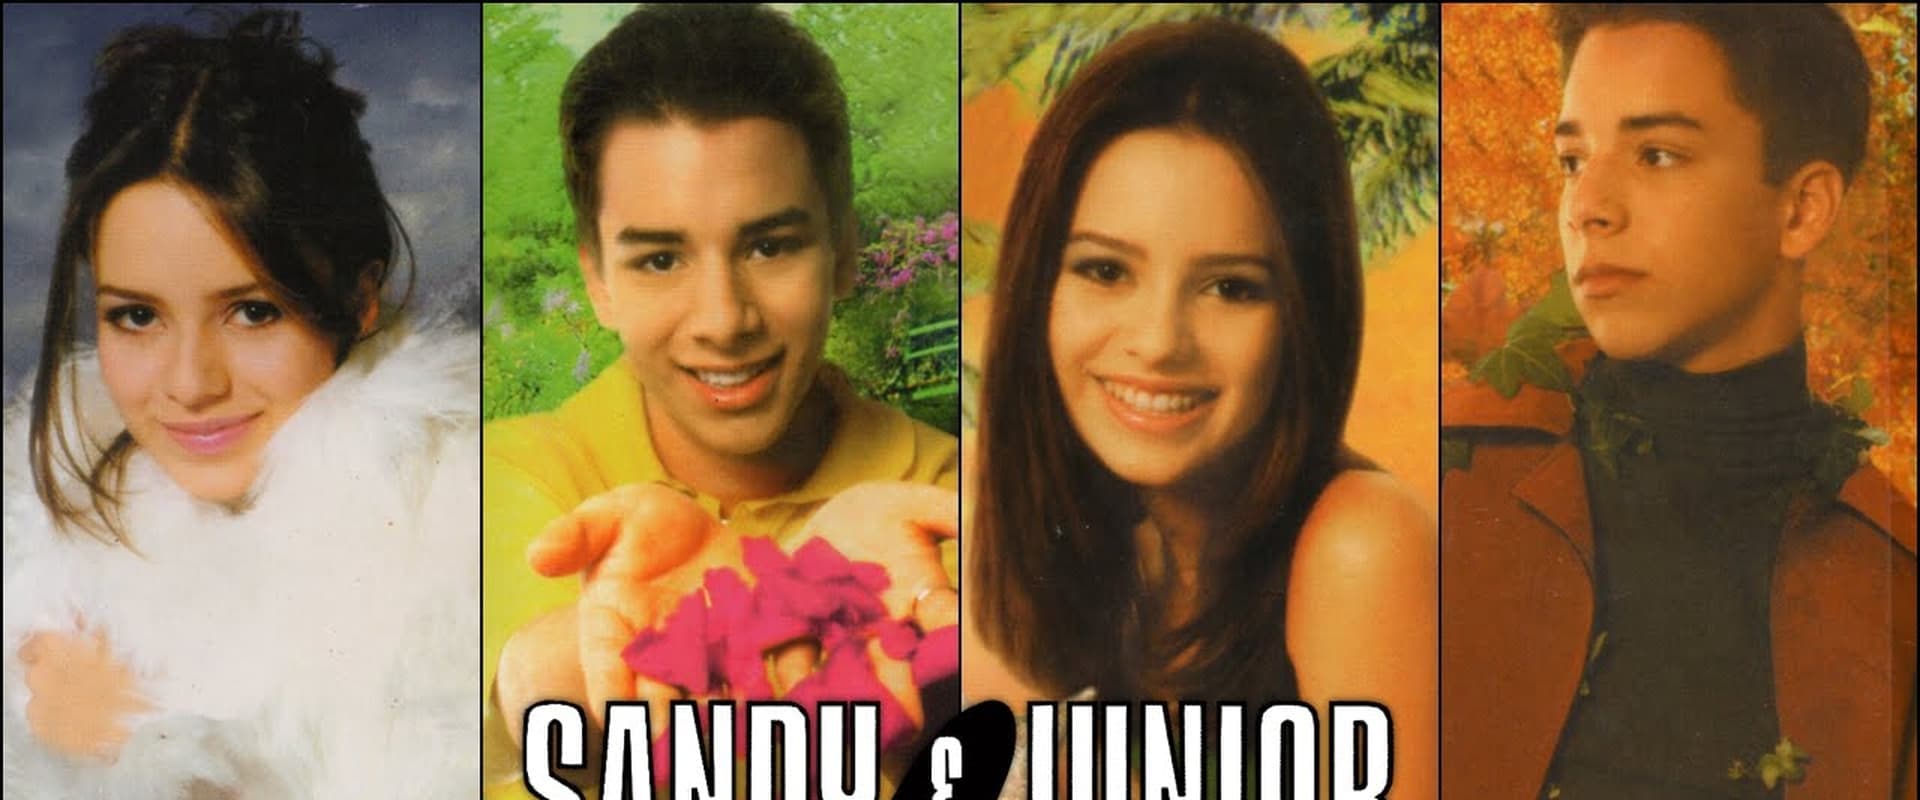 Sandy & Junior: Quatro Estações - O Show